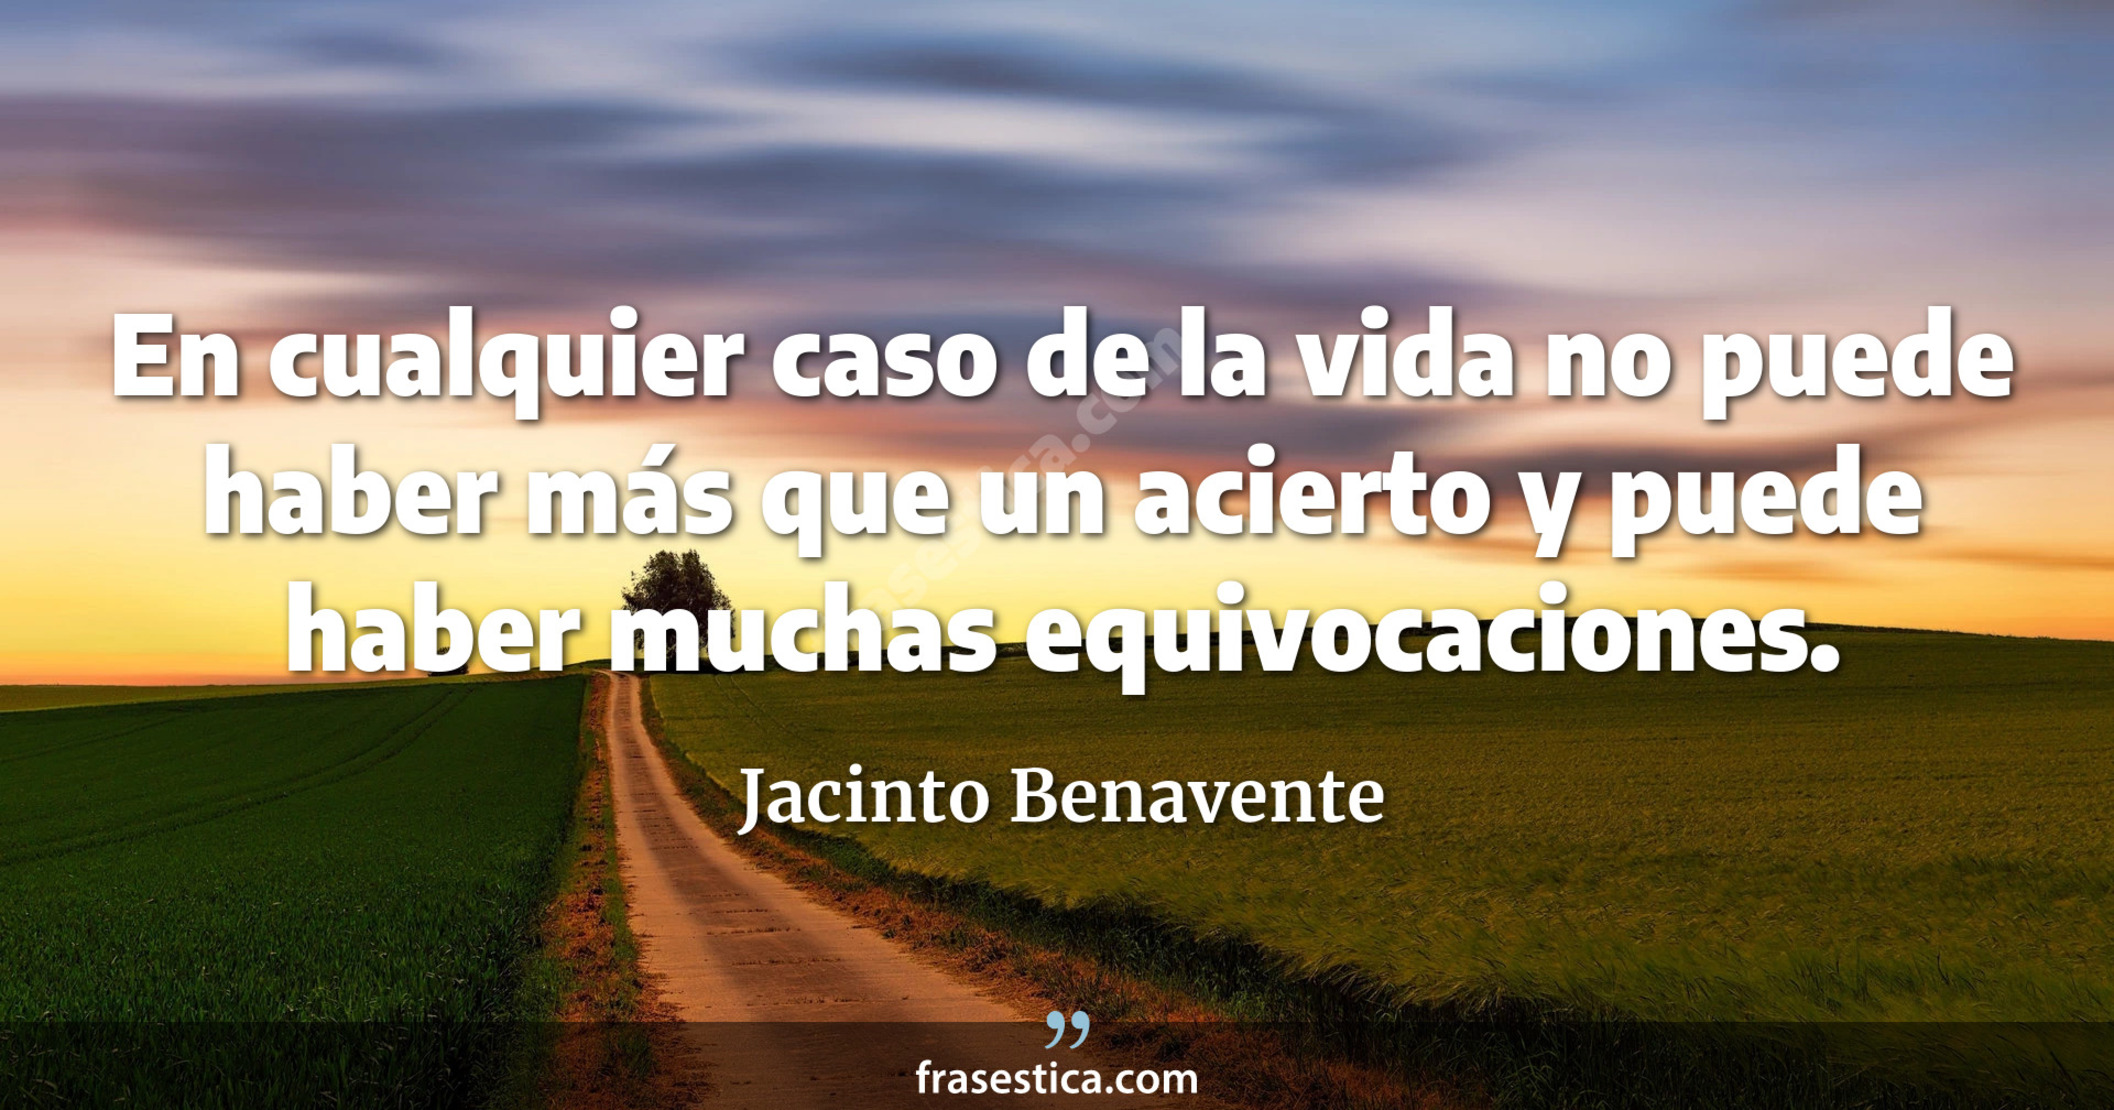 En cualquier caso de la vida no puede haber más que un acierto y puede haber muchas equivocaciones. - Jacinto Benavente